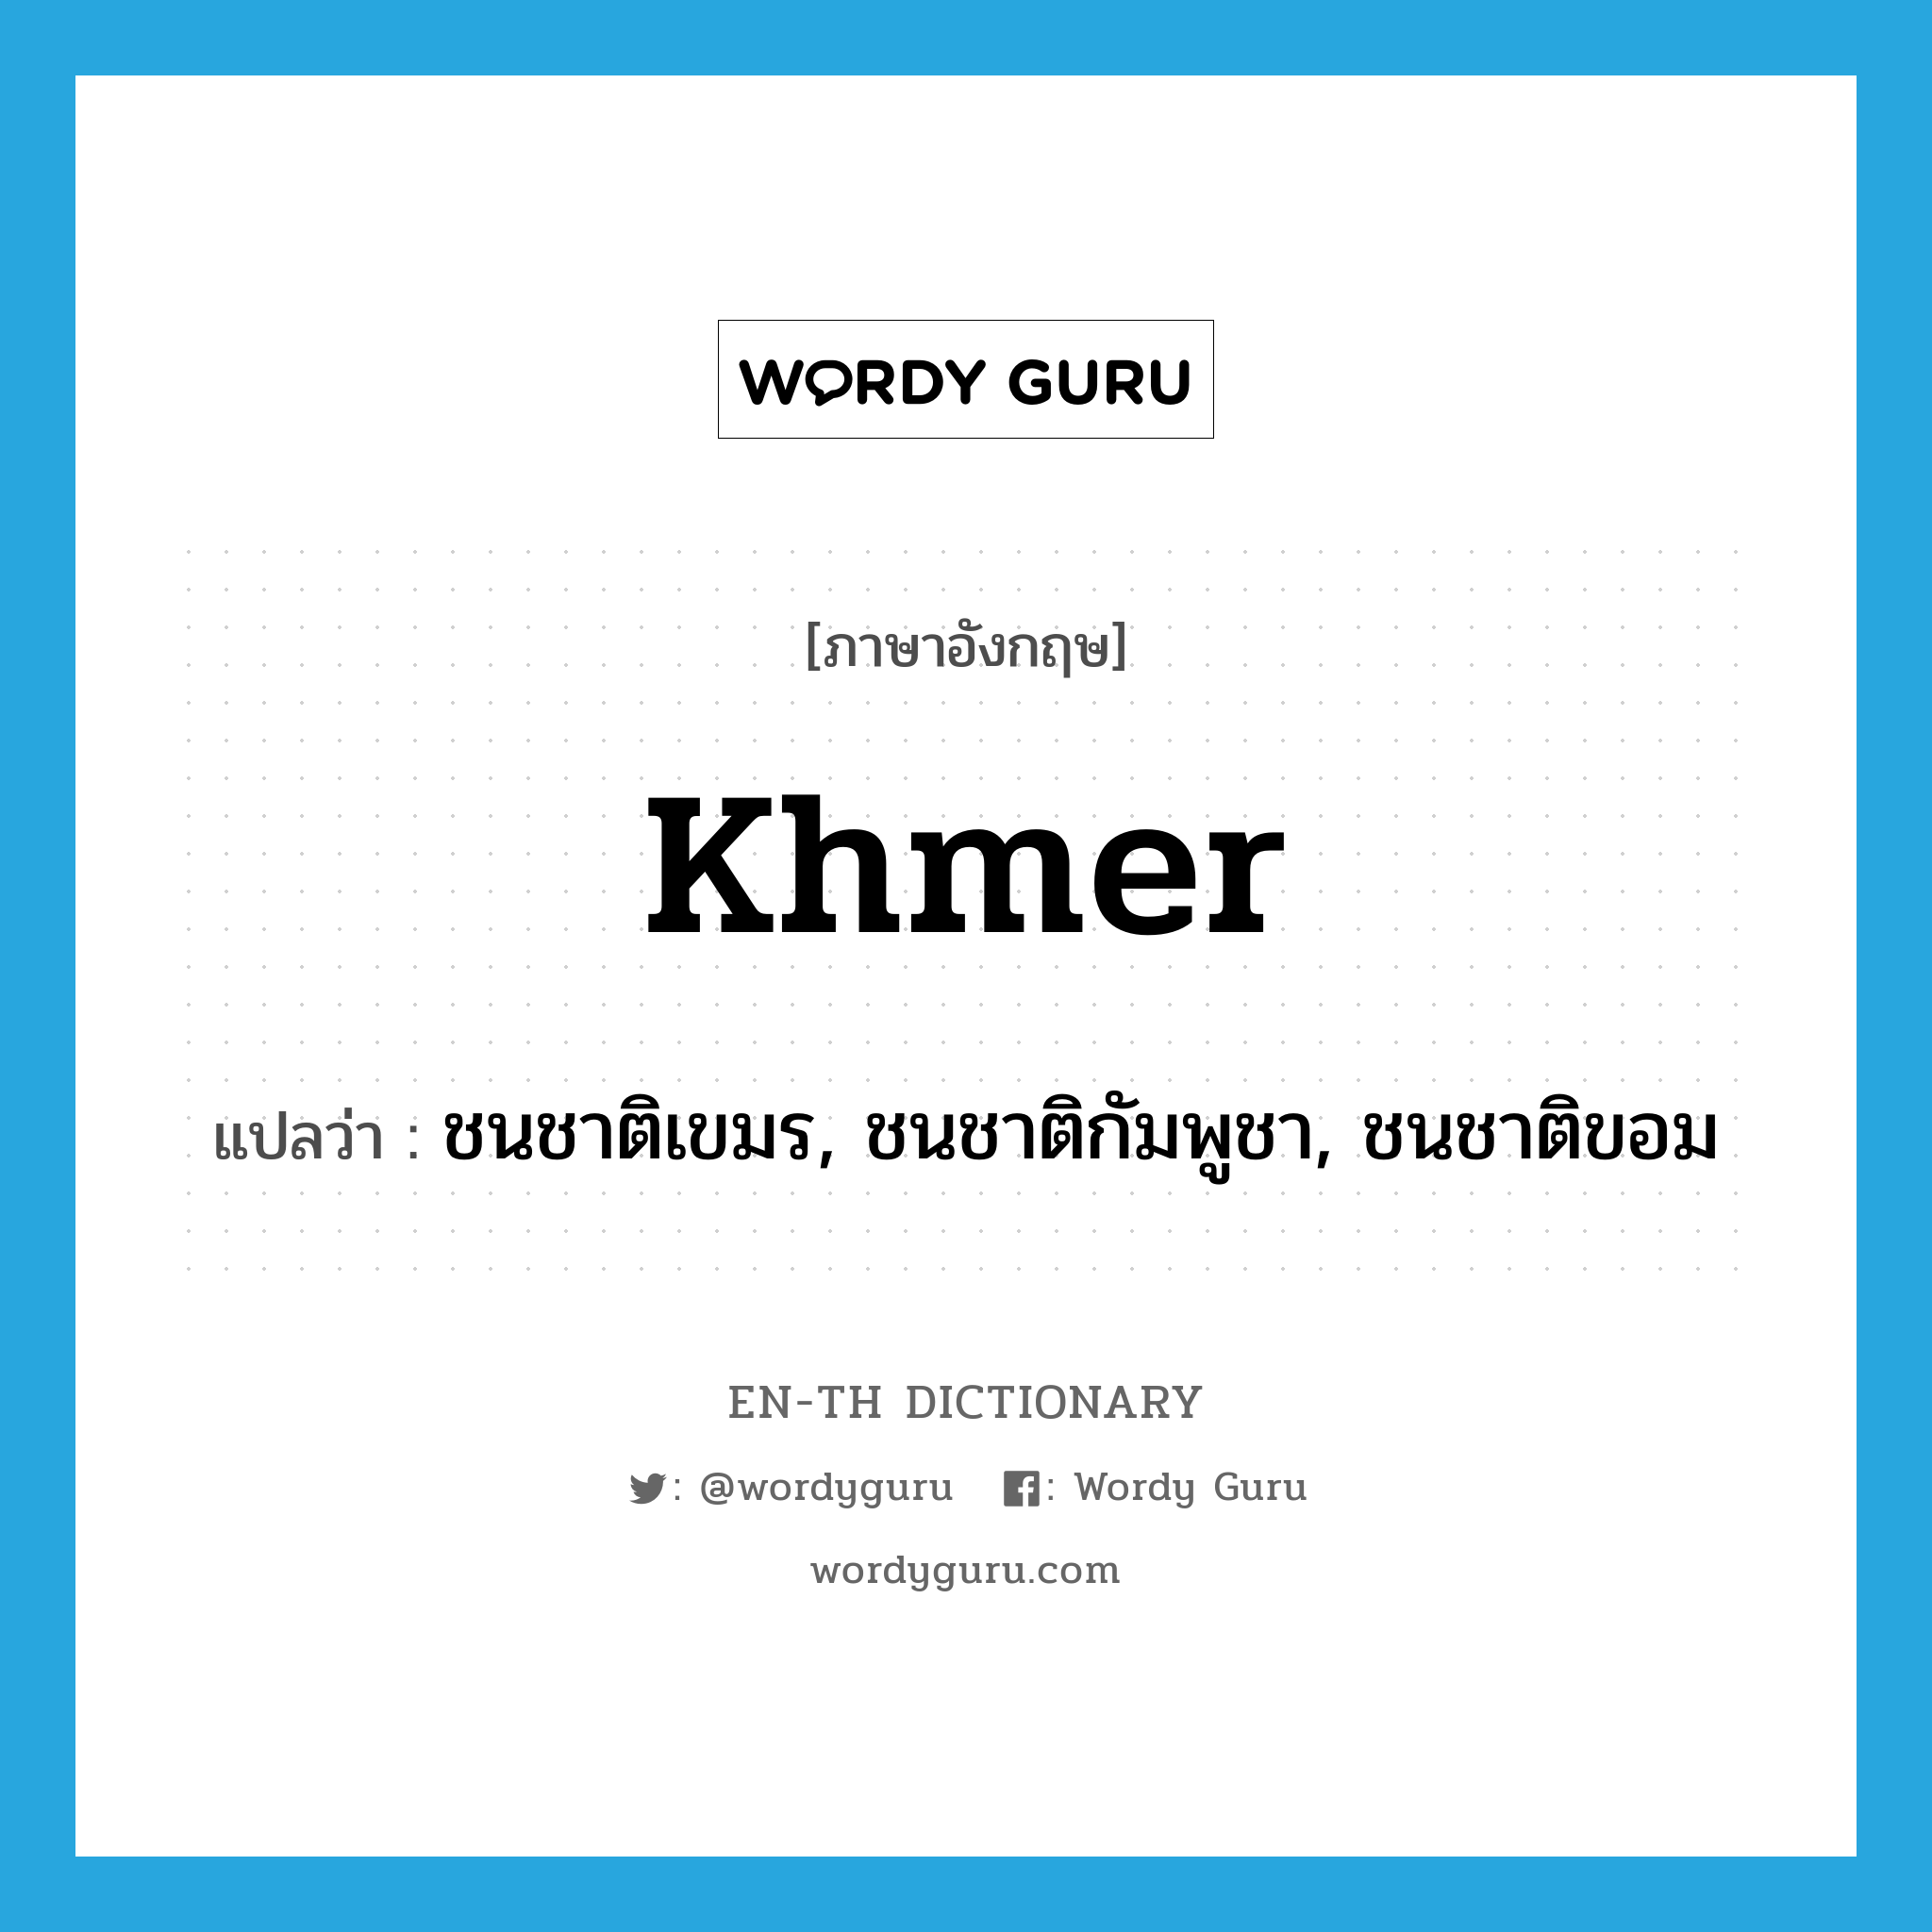 ชนชาติเขมร, ชนชาติกัมพูชา, ชนชาติขอม ภาษาอังกฤษ?, คำศัพท์ภาษาอังกฤษ ชนชาติเขมร, ชนชาติกัมพูชา, ชนชาติขอม แปลว่า Khmer ประเภท N หมวด N